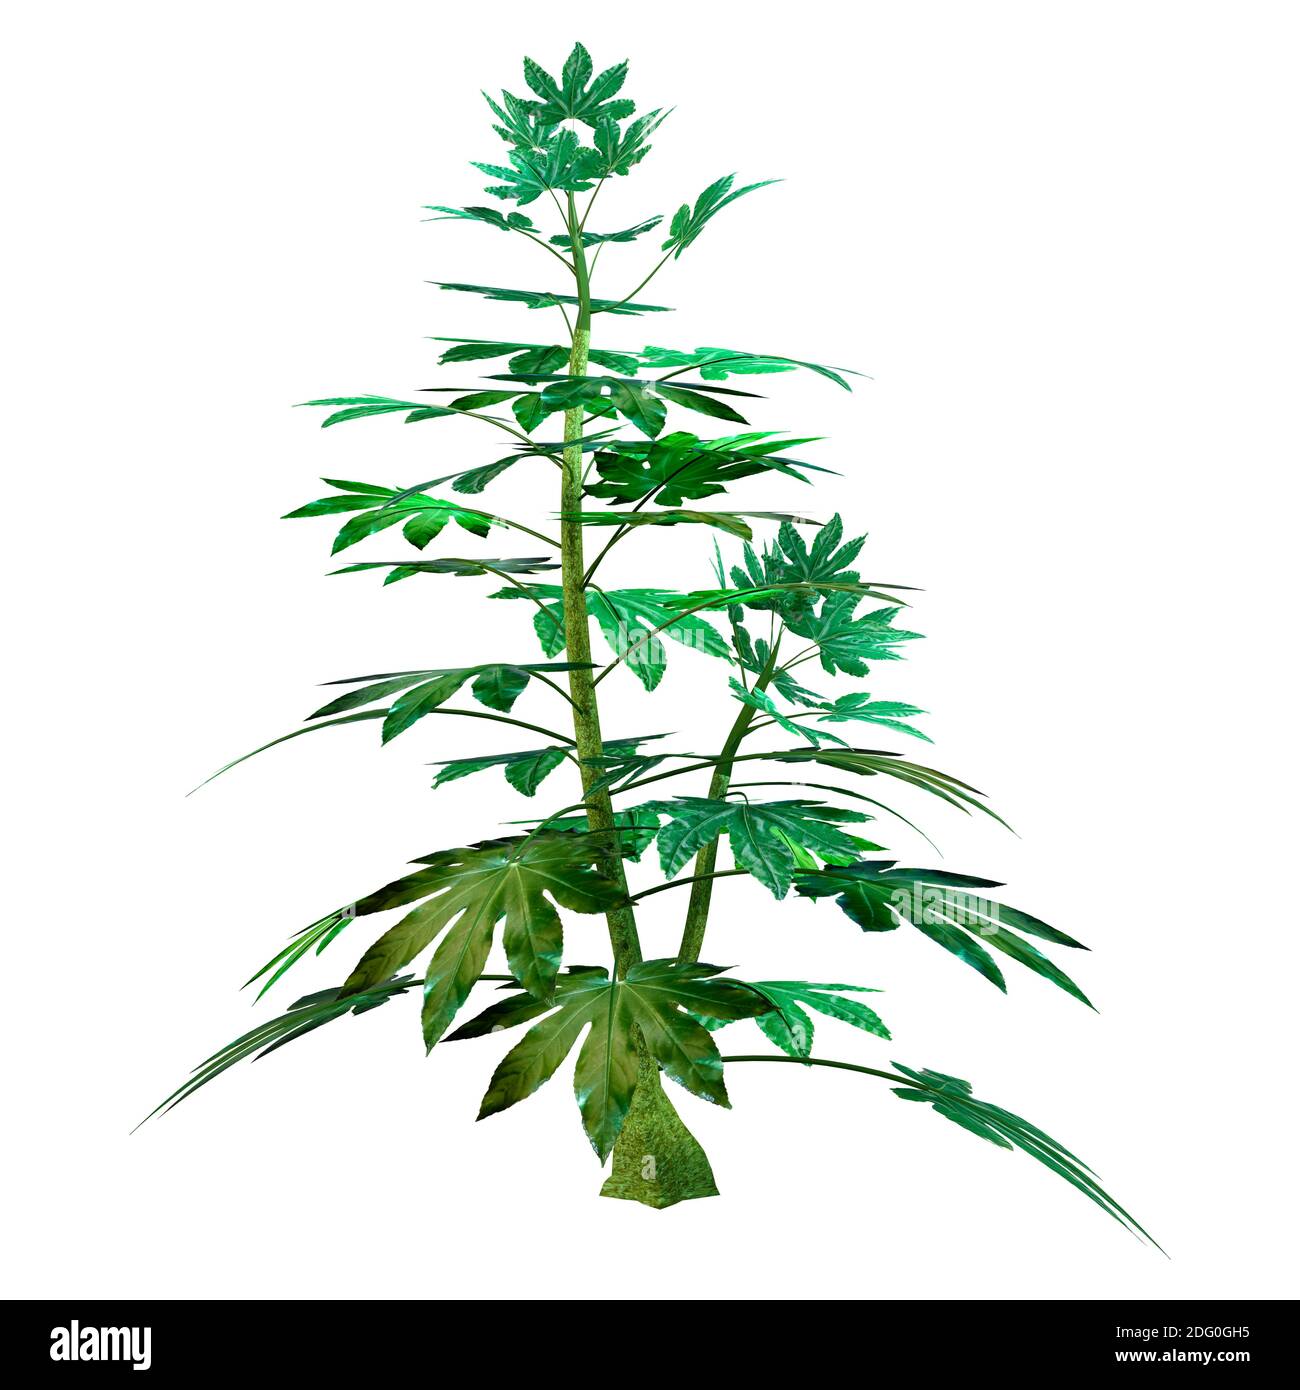 3D-Rendering einer grünen japanischen Aralia-Pflanze oder Fatsia Japonica isoliert auf weißem Hintergrund Stockfoto